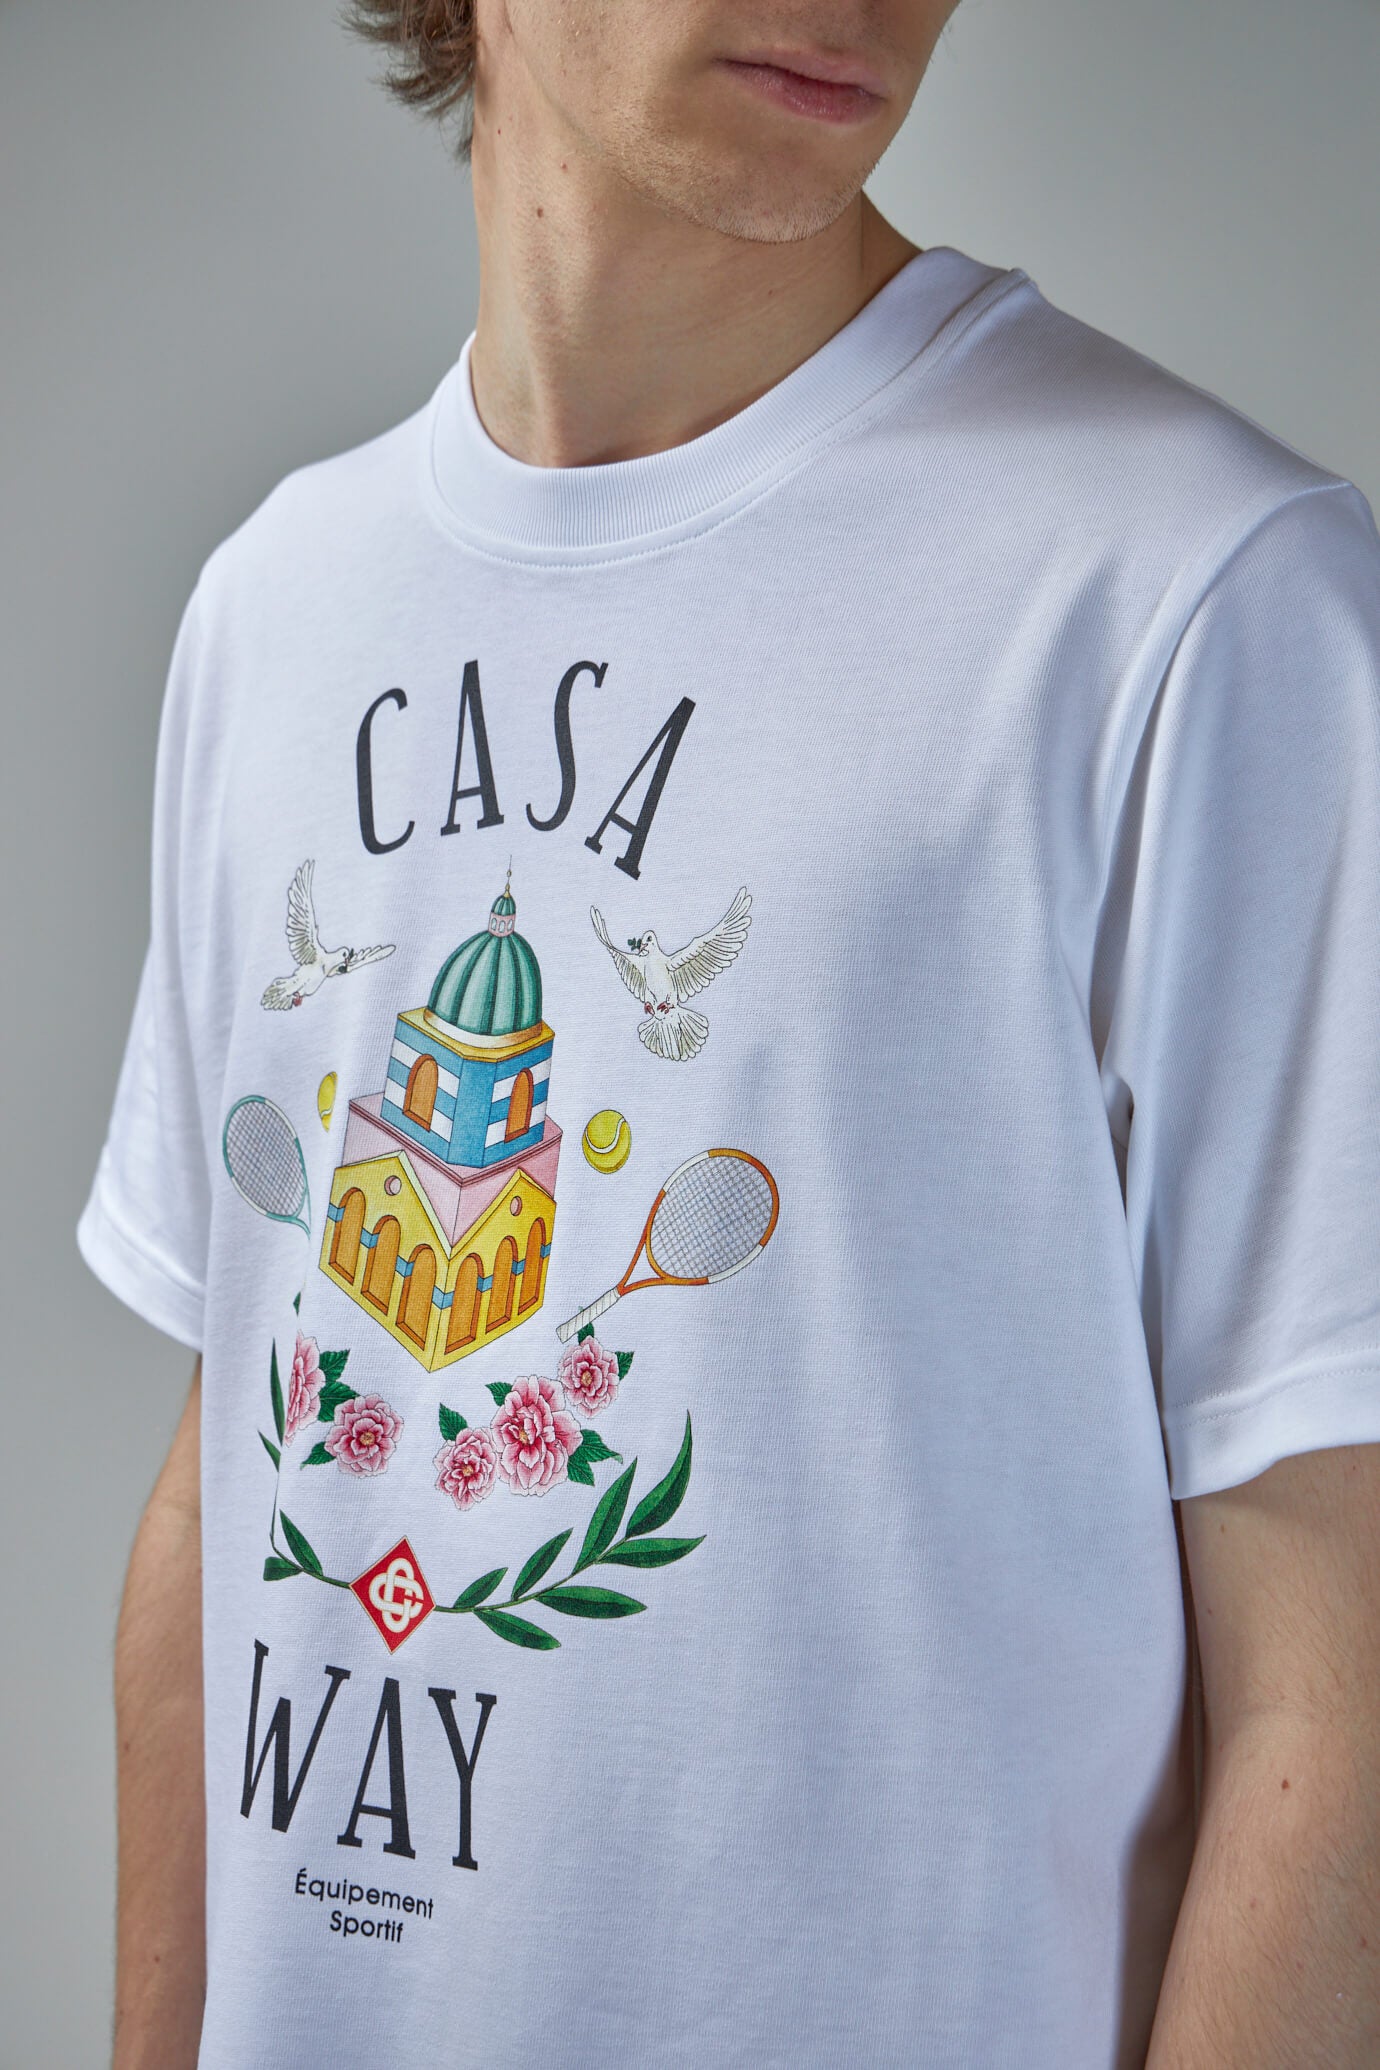 Way Printed T-Shirt Casa Way